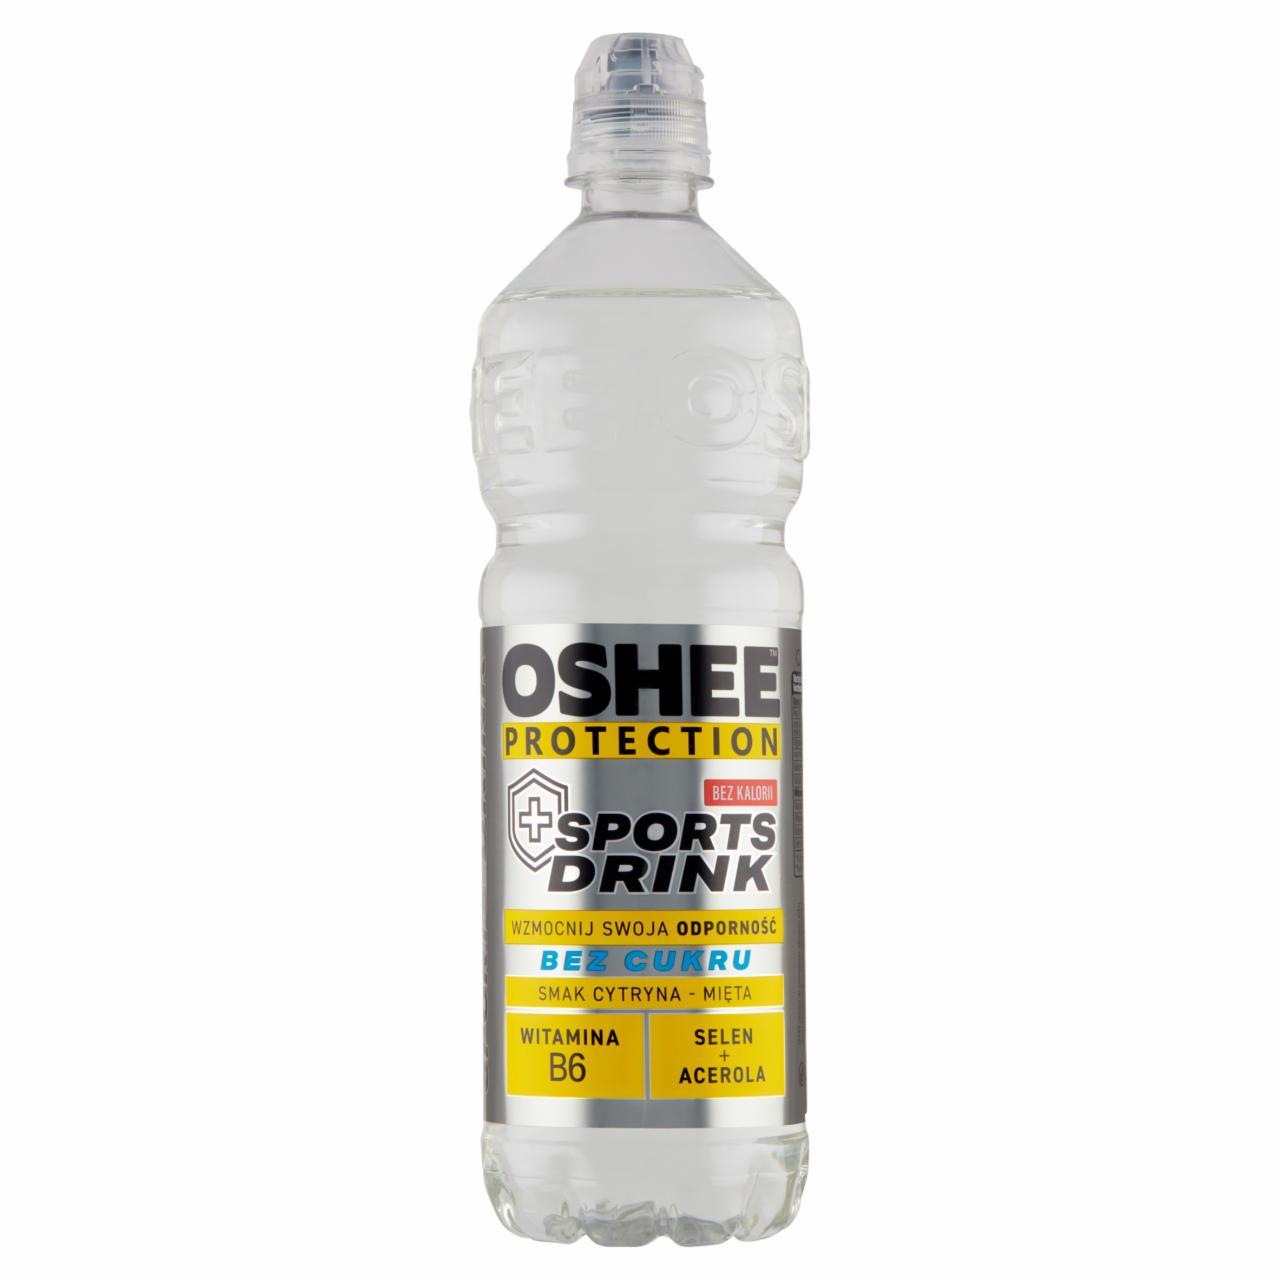 Zdjęcia - Oshee Protection Napój niegazowany o smaku cytrynowo-miętowym 0,75 l